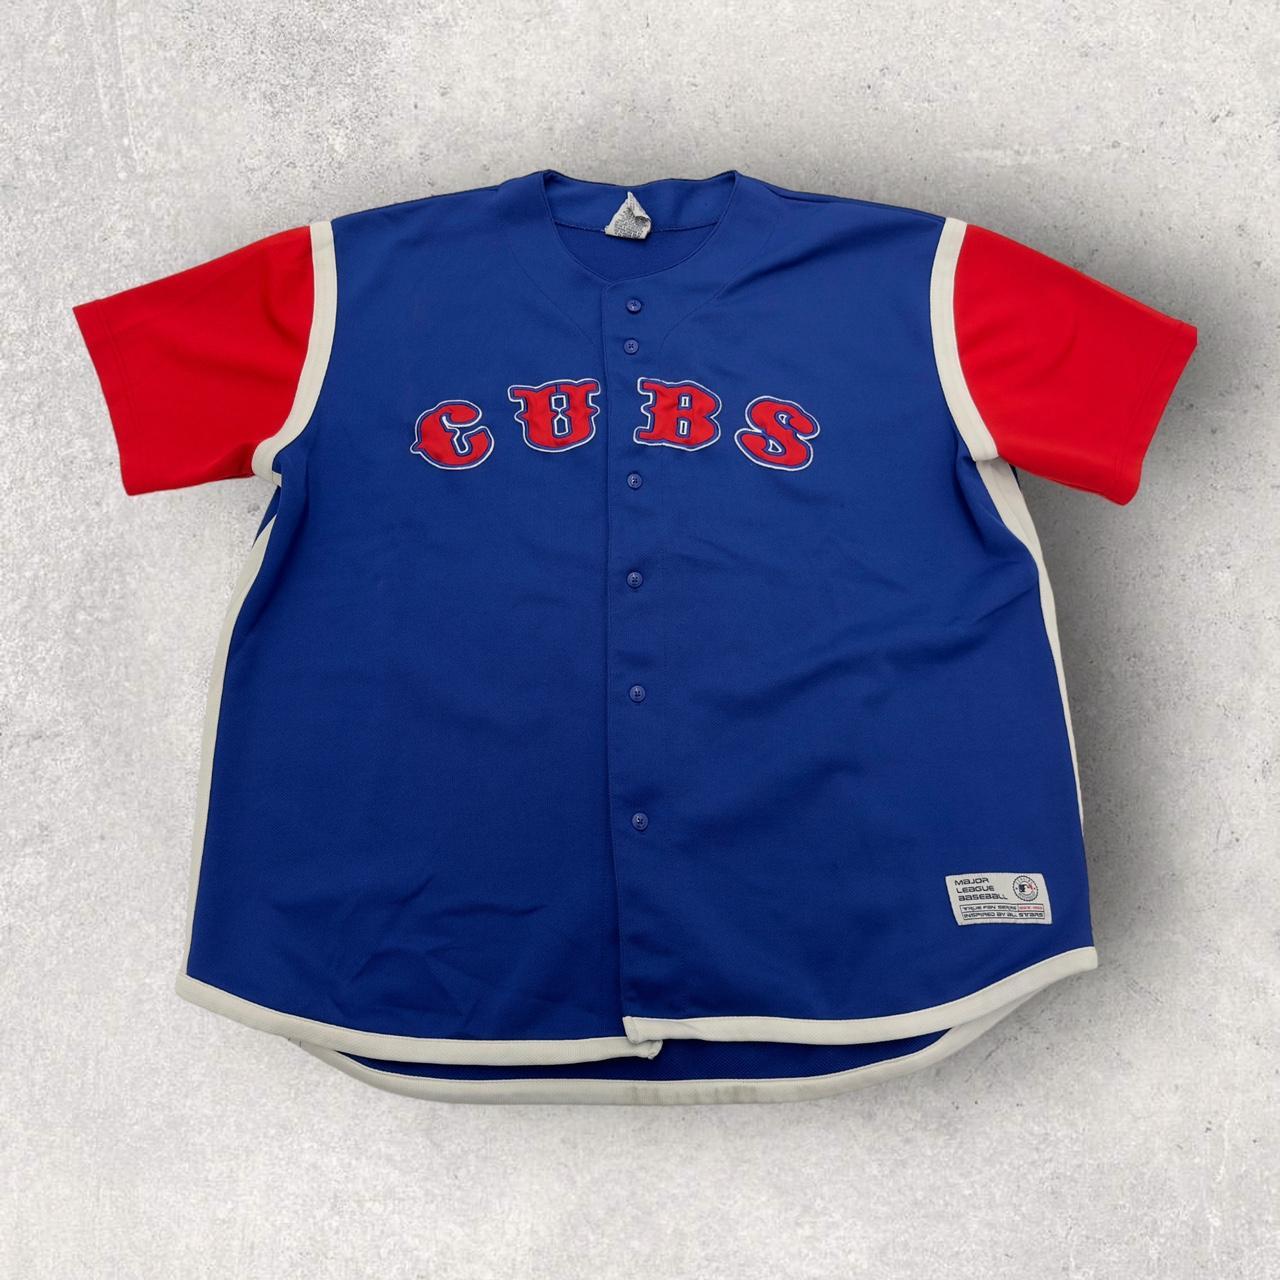 Vintage True Fan Chicago Cubs baseball jersey in - Depop